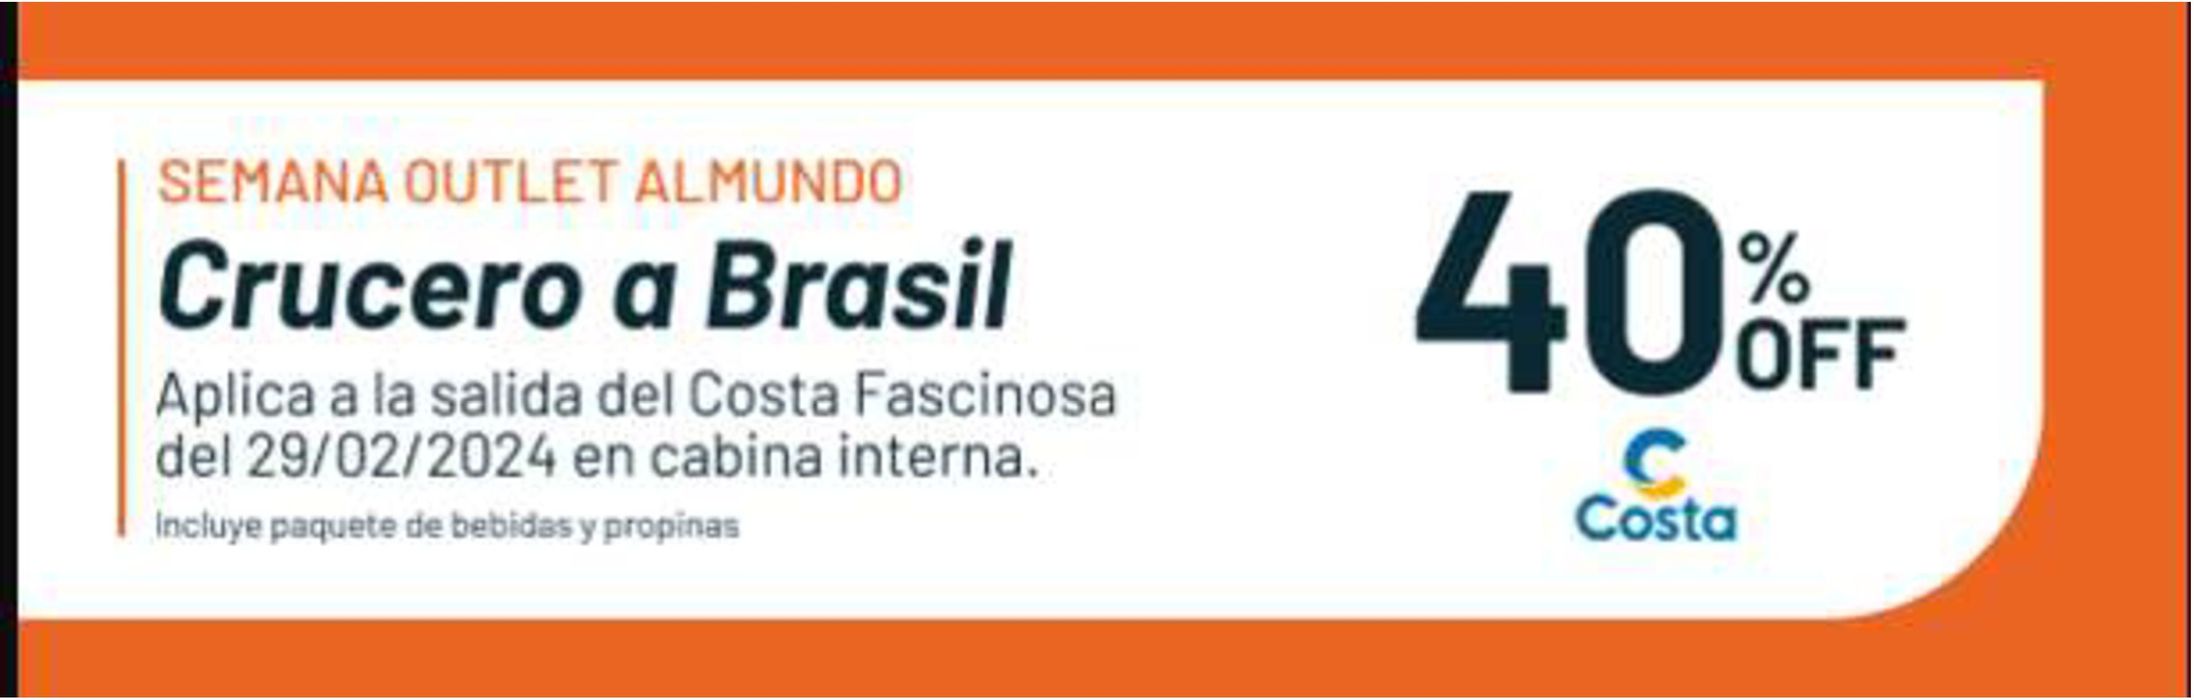 Catálogo Almundo en Buenos Aires | Crucero a Brasil 40% off | 18/1/2024 - 18/6/2024